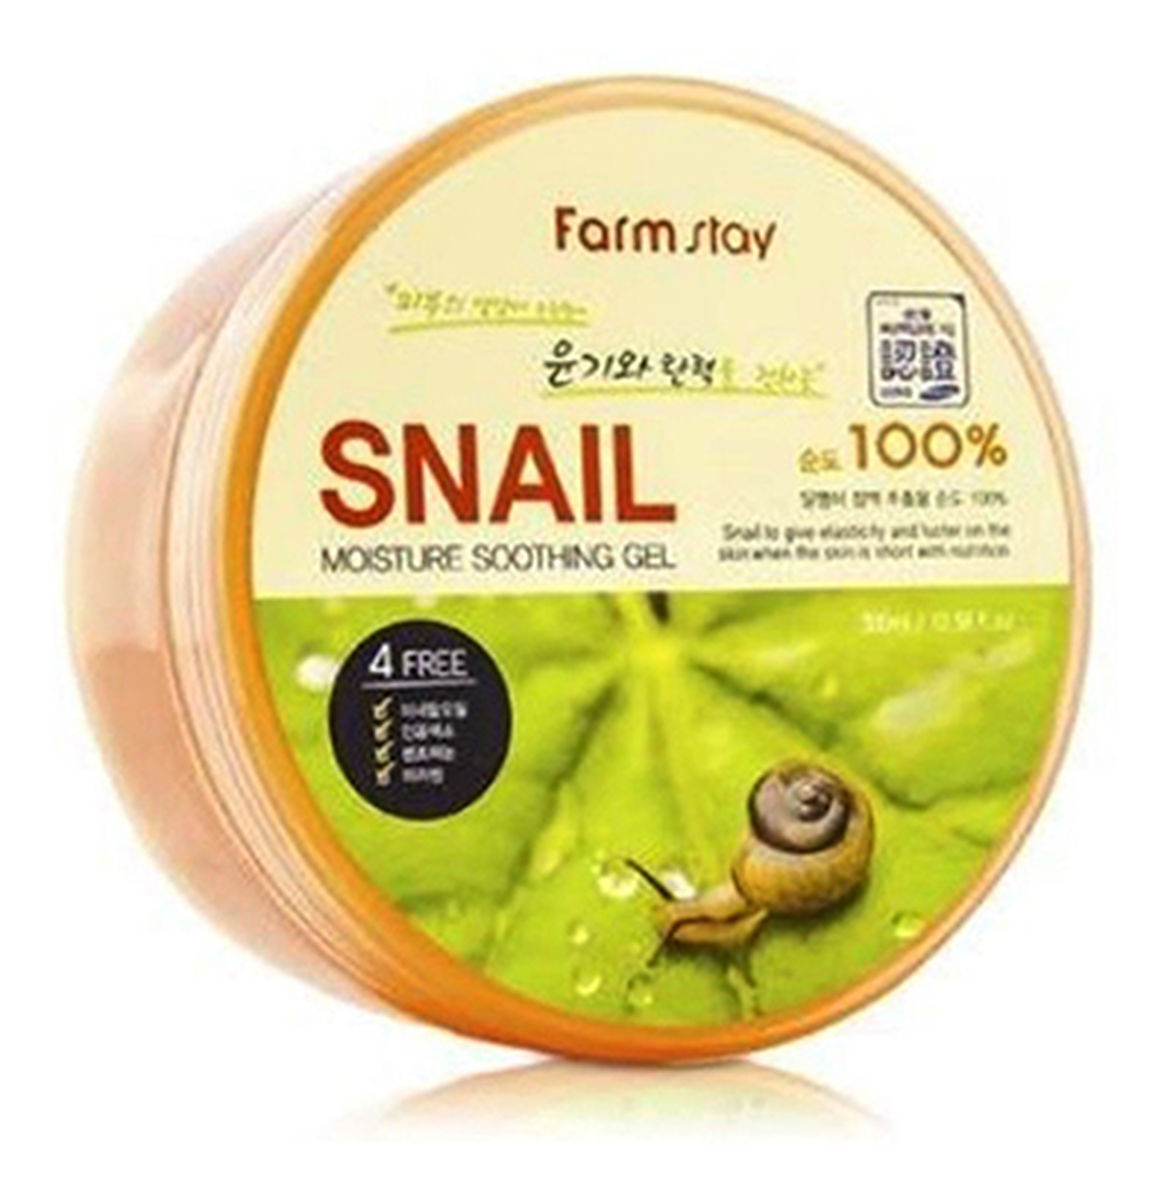 Farm Stay Snail Moisture Soothing Gel koreański żel ze śluzem ślimaka